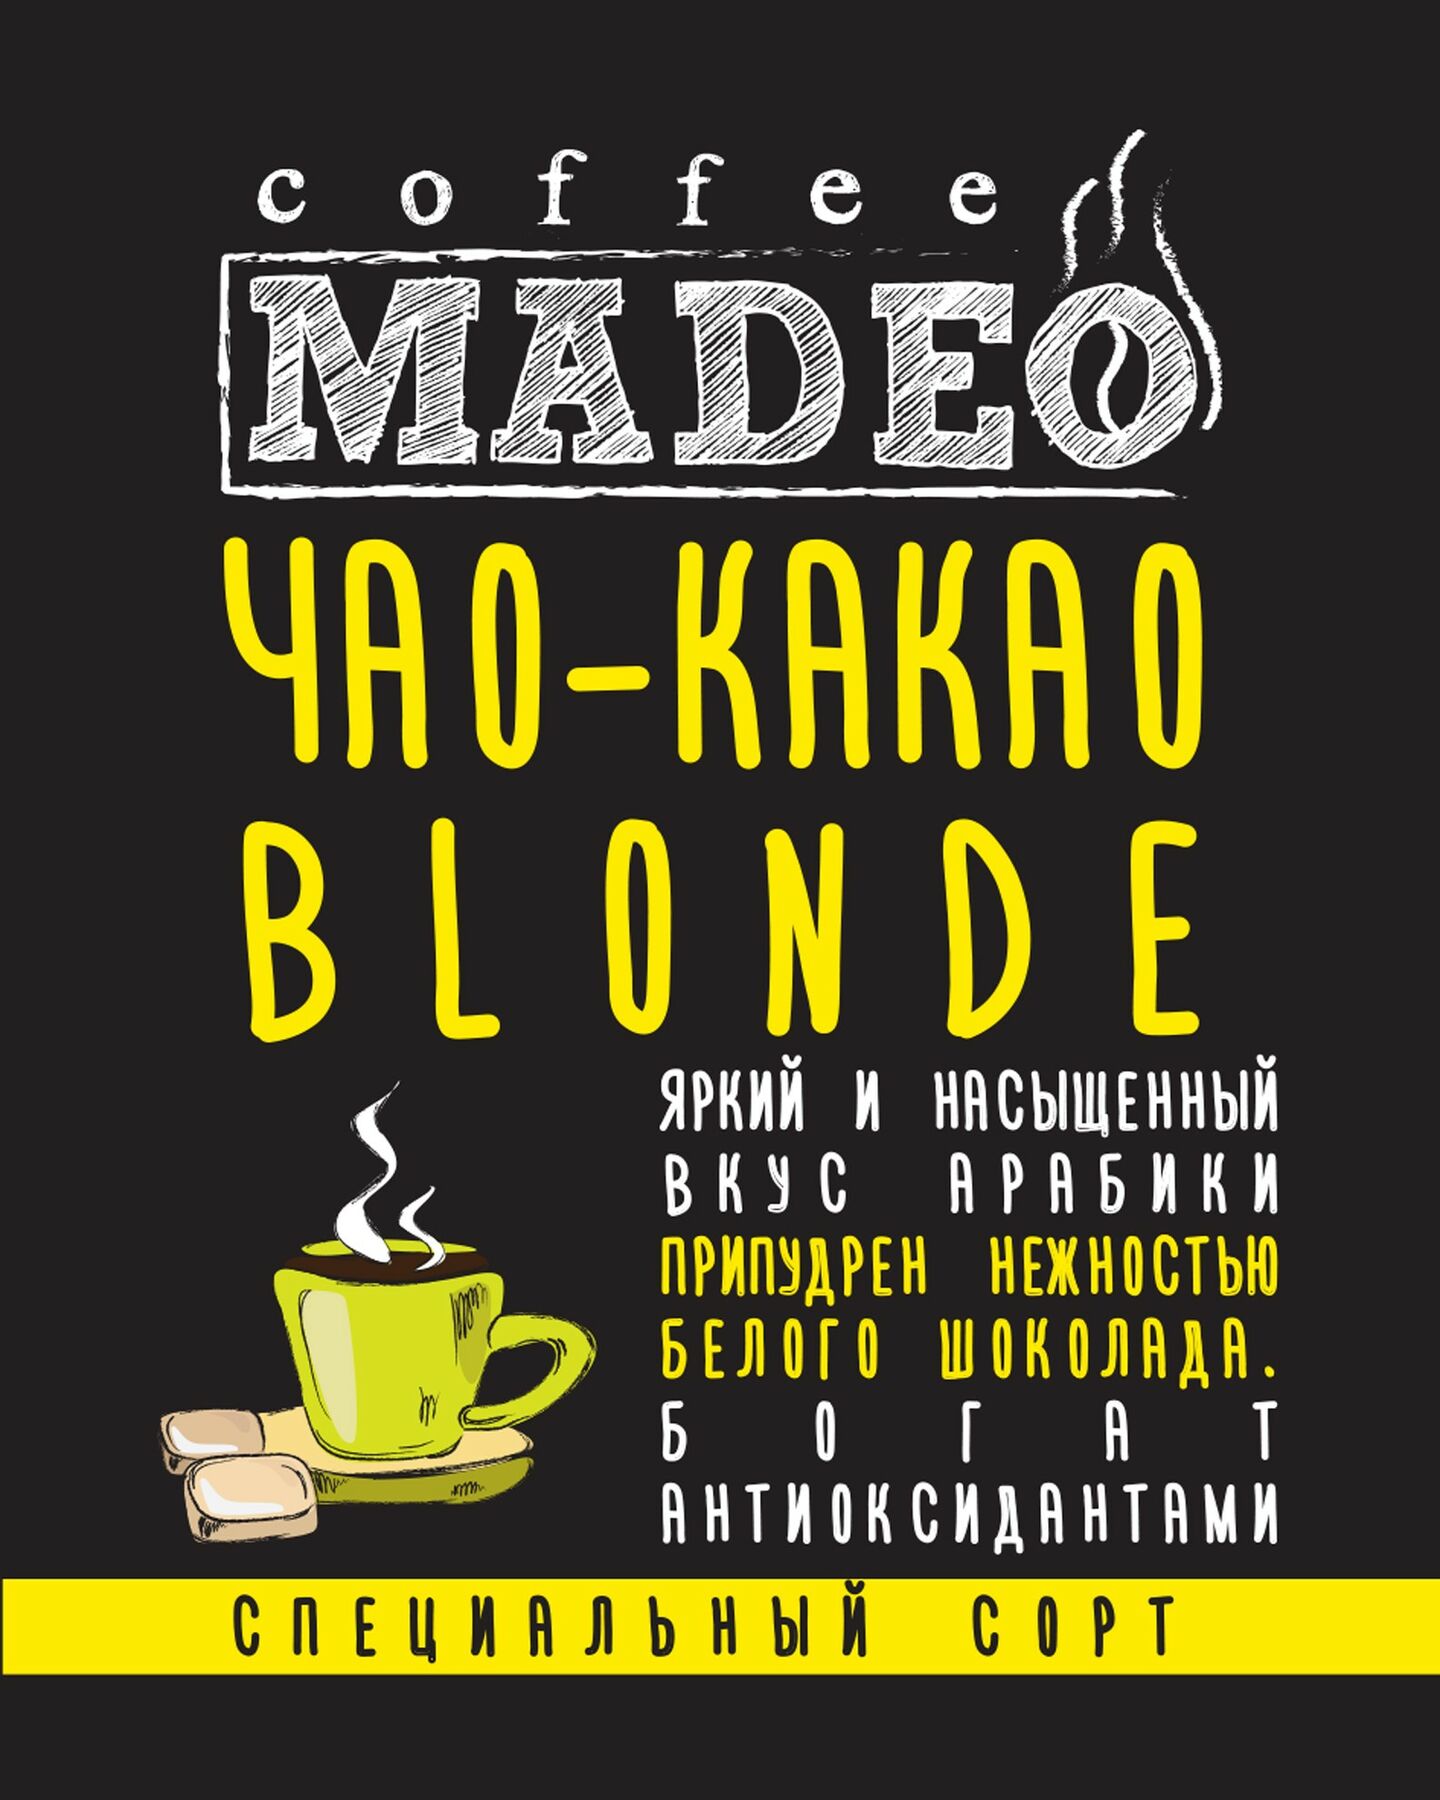 Кофе Мадео Арабика Чао-Какао blonde в обсыпке из светлого какао